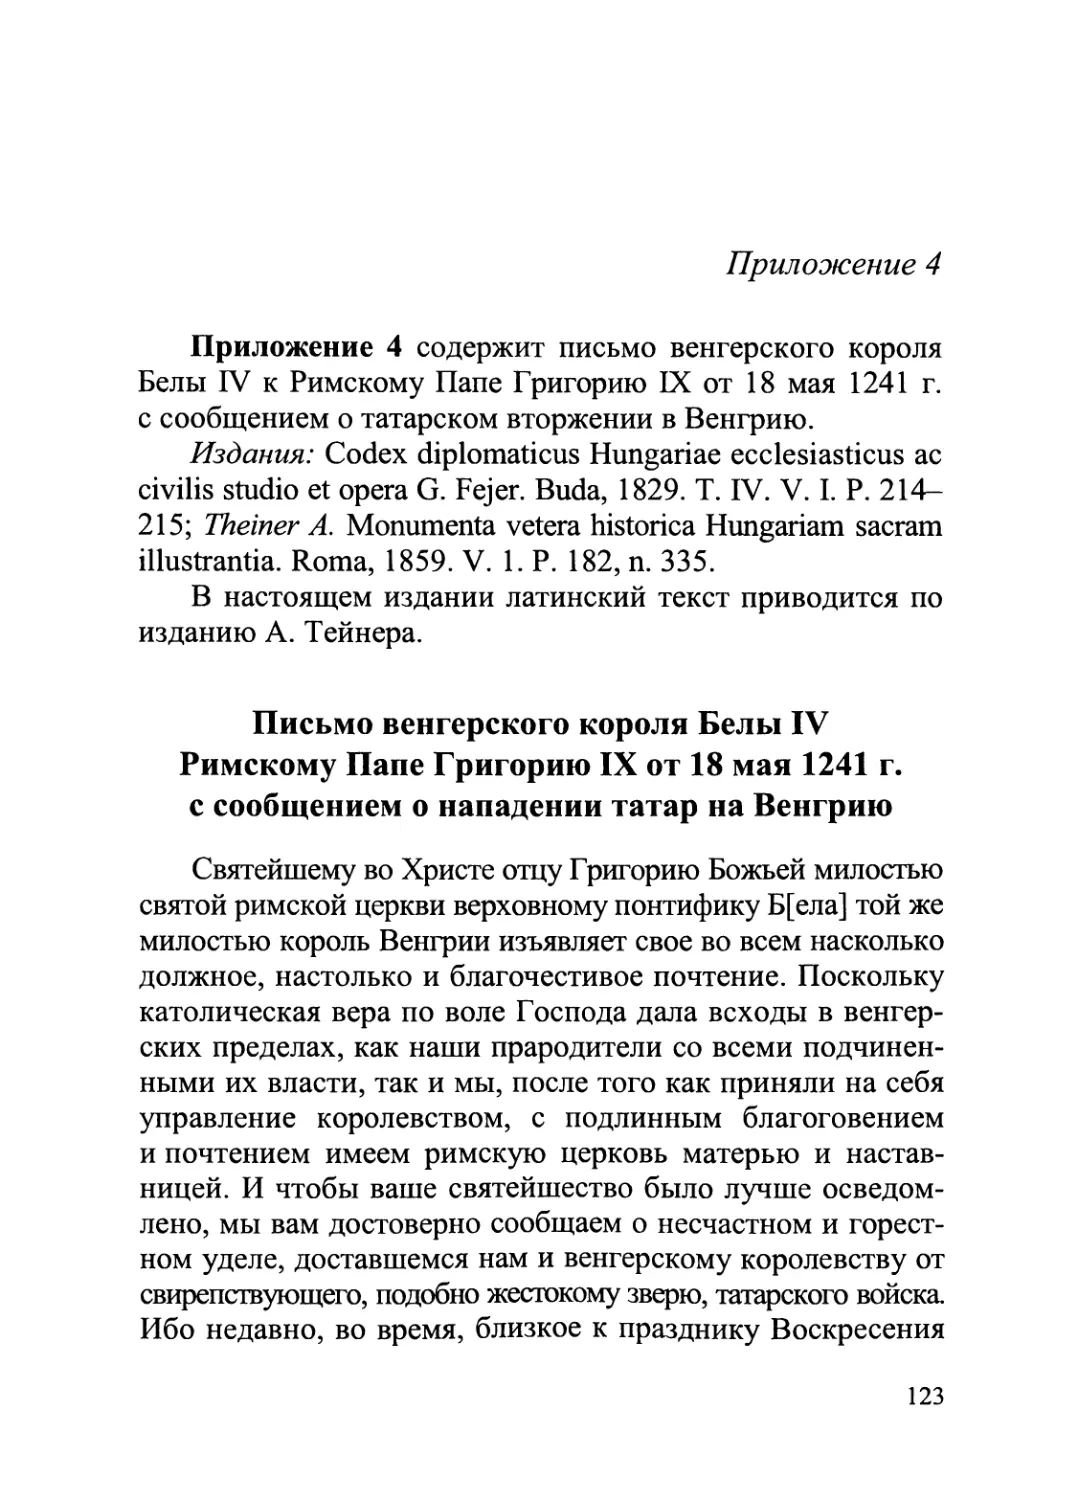 Приложение 4. Письмо венгерского короля Белы IV Римскому Папе Григорию IX от 18 мая 1241 г.